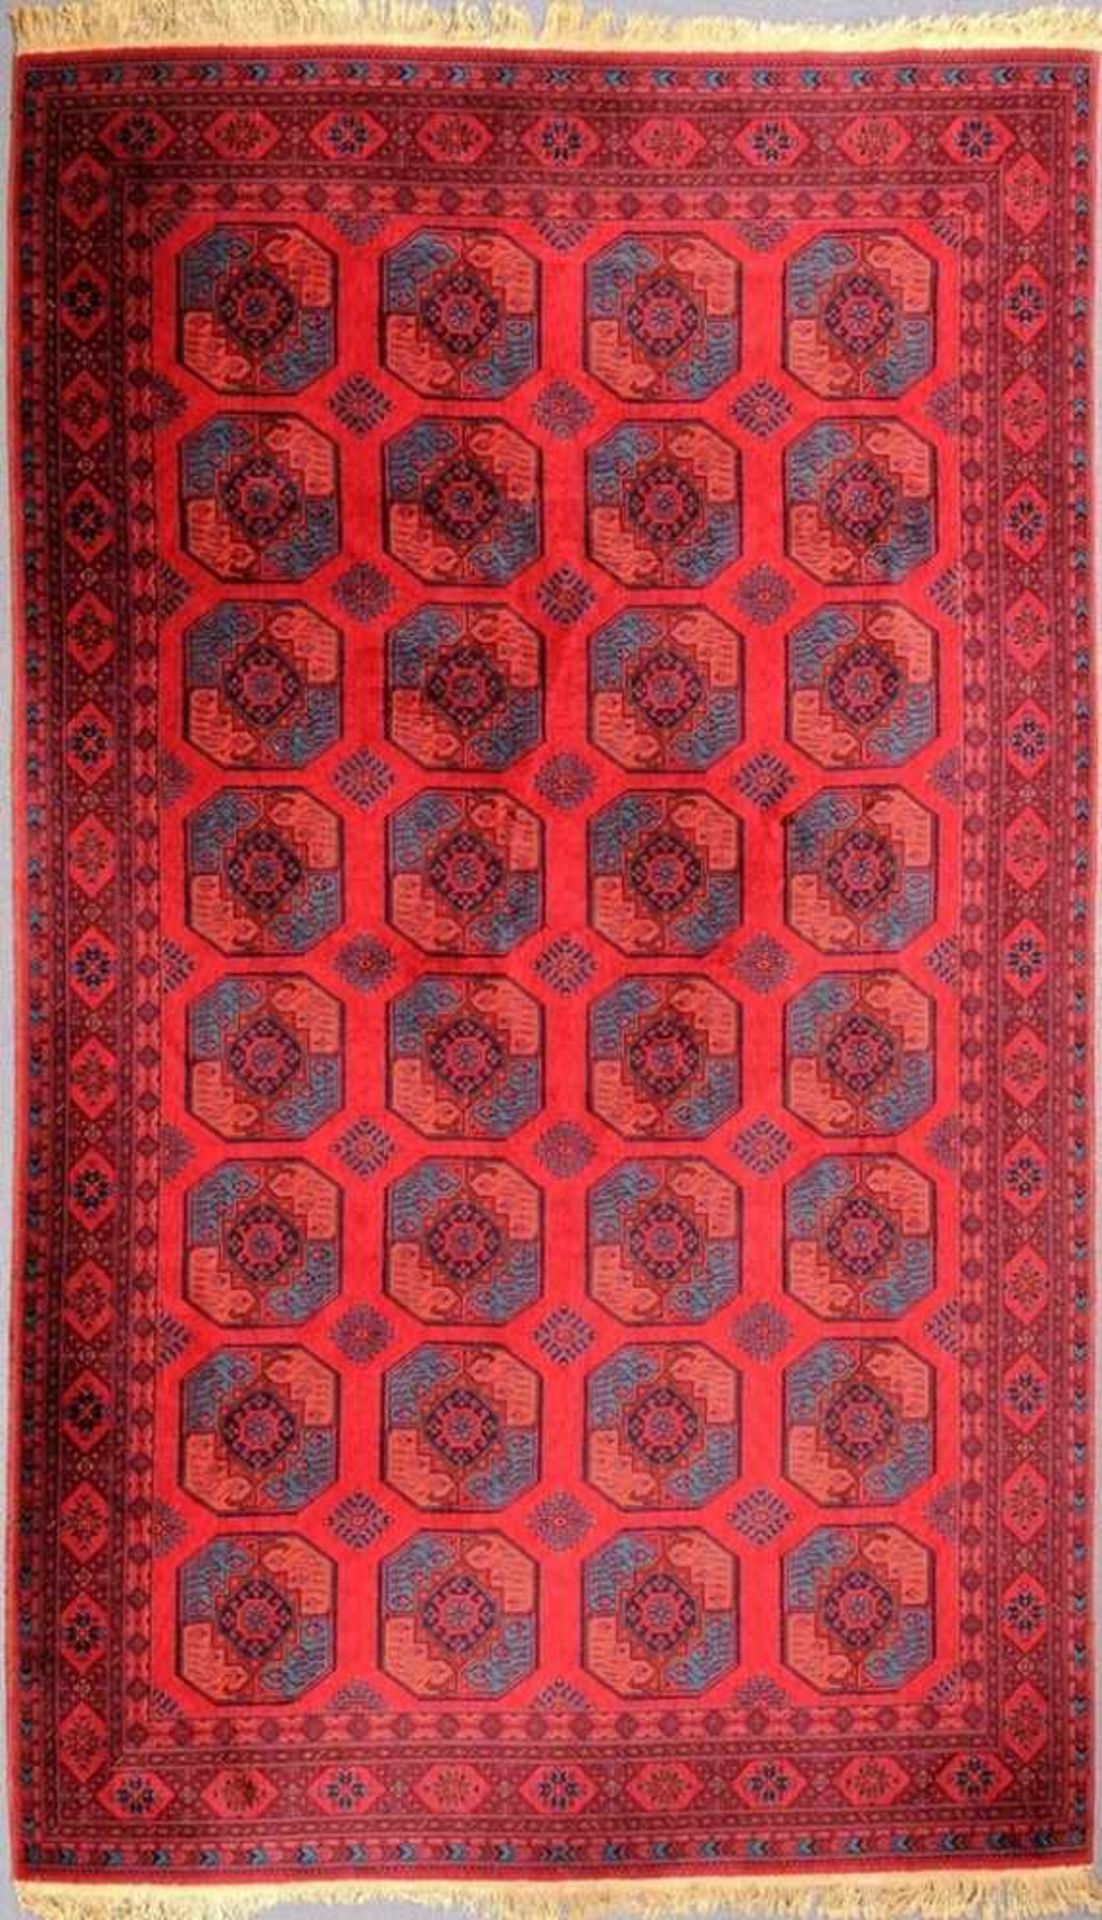 Großer Teppich Wolle/Baumwolle. Maschinenweberei. Nach afghanischen Vorbildern. Ornamentaldekor in